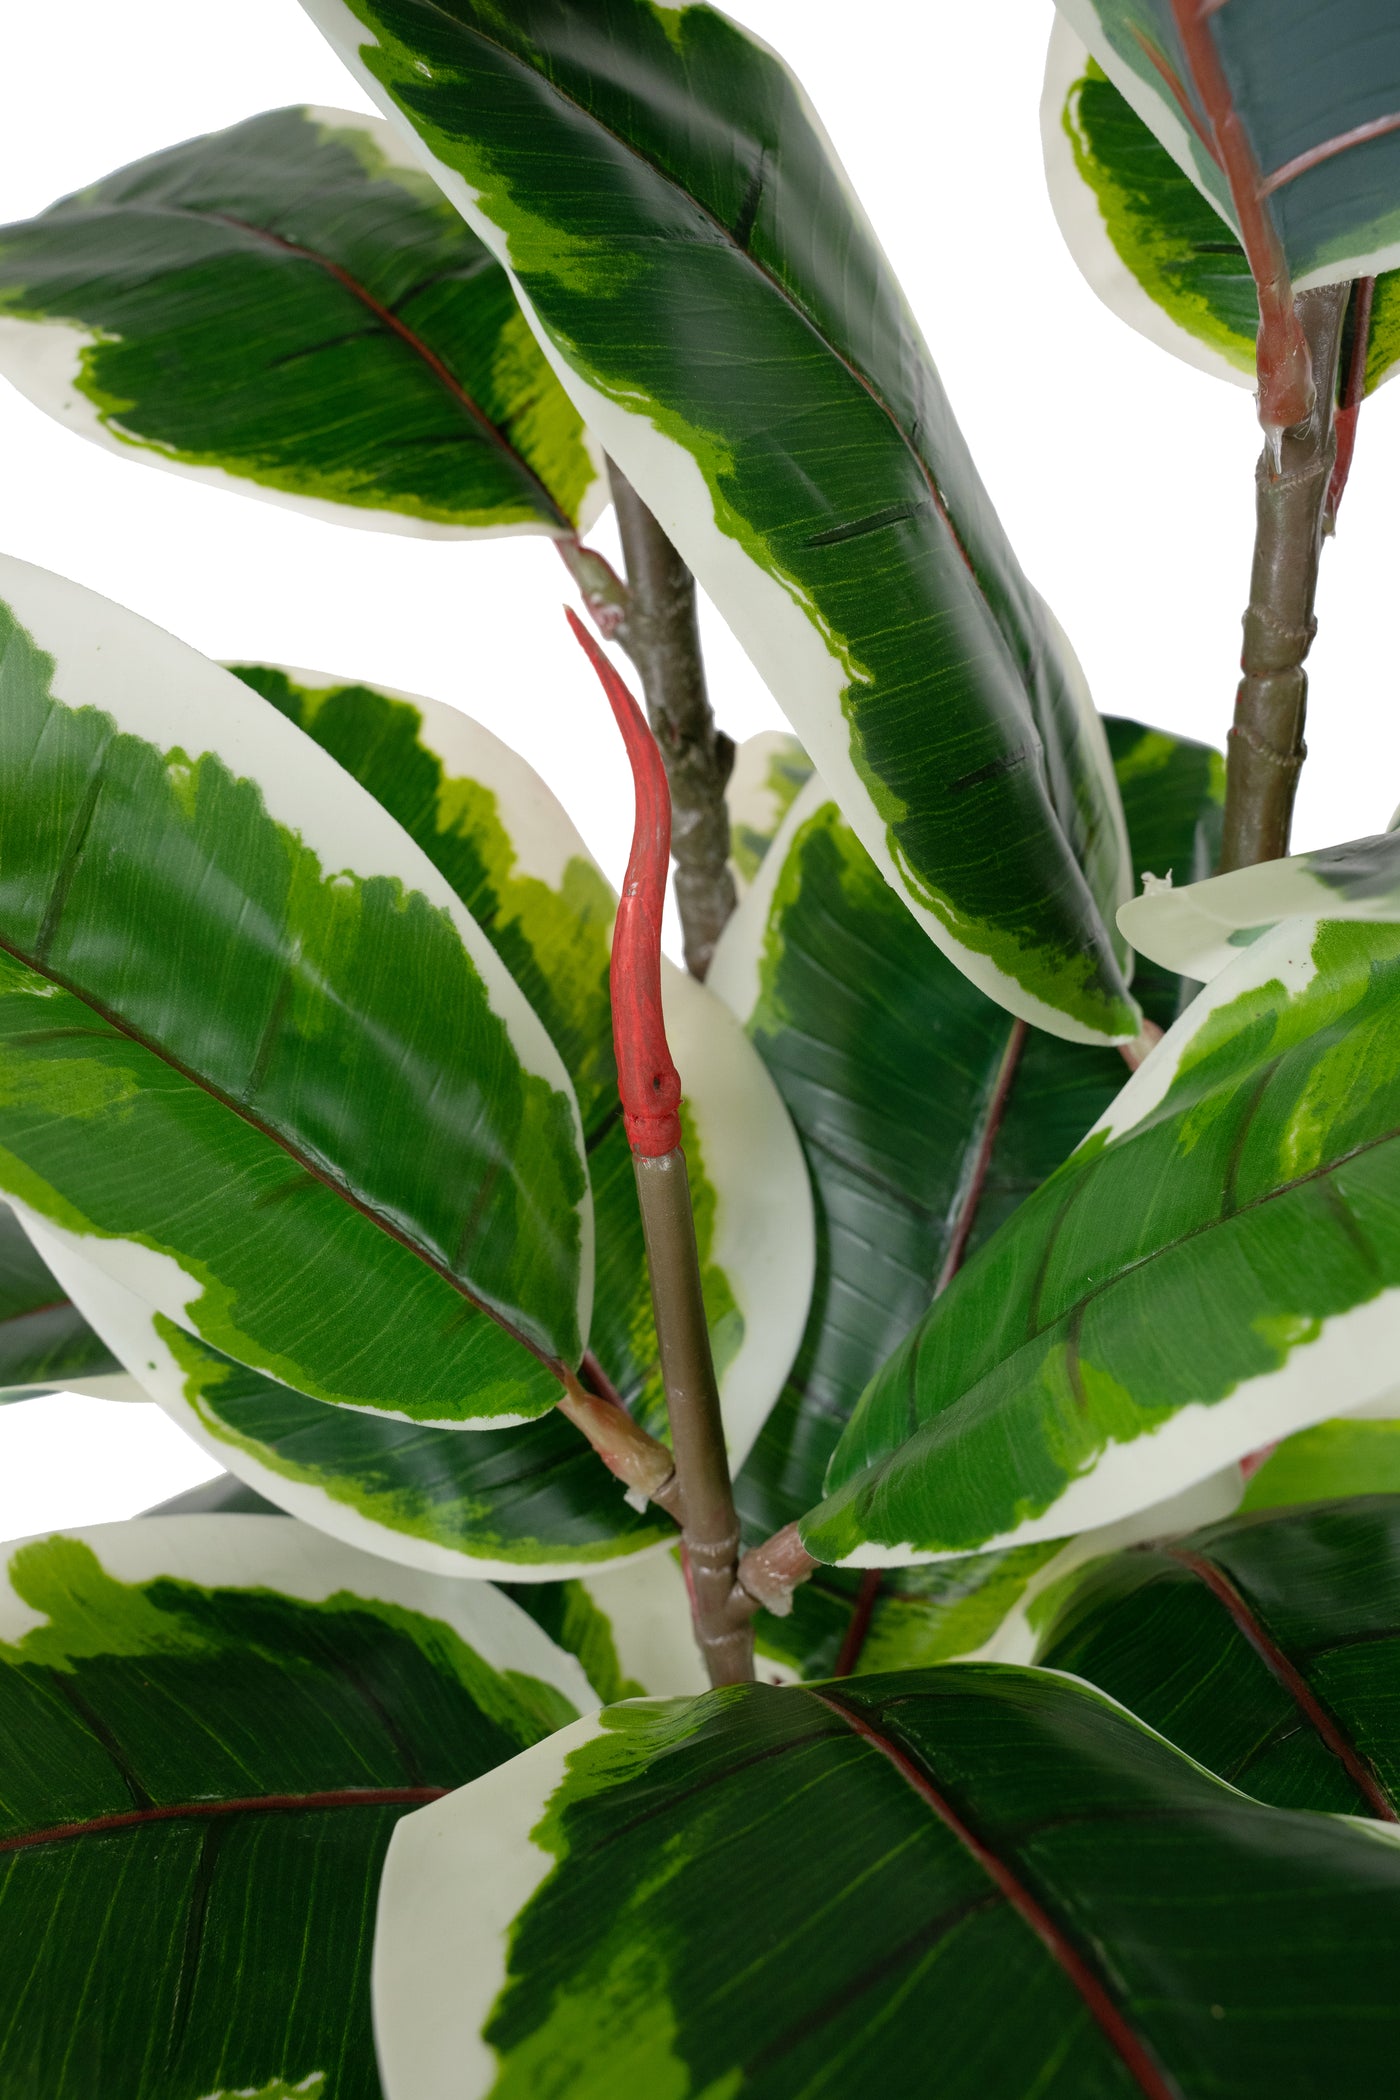 Copac artificial H160cm Ficus elastica variegat cu 61 frunze verde cu alb